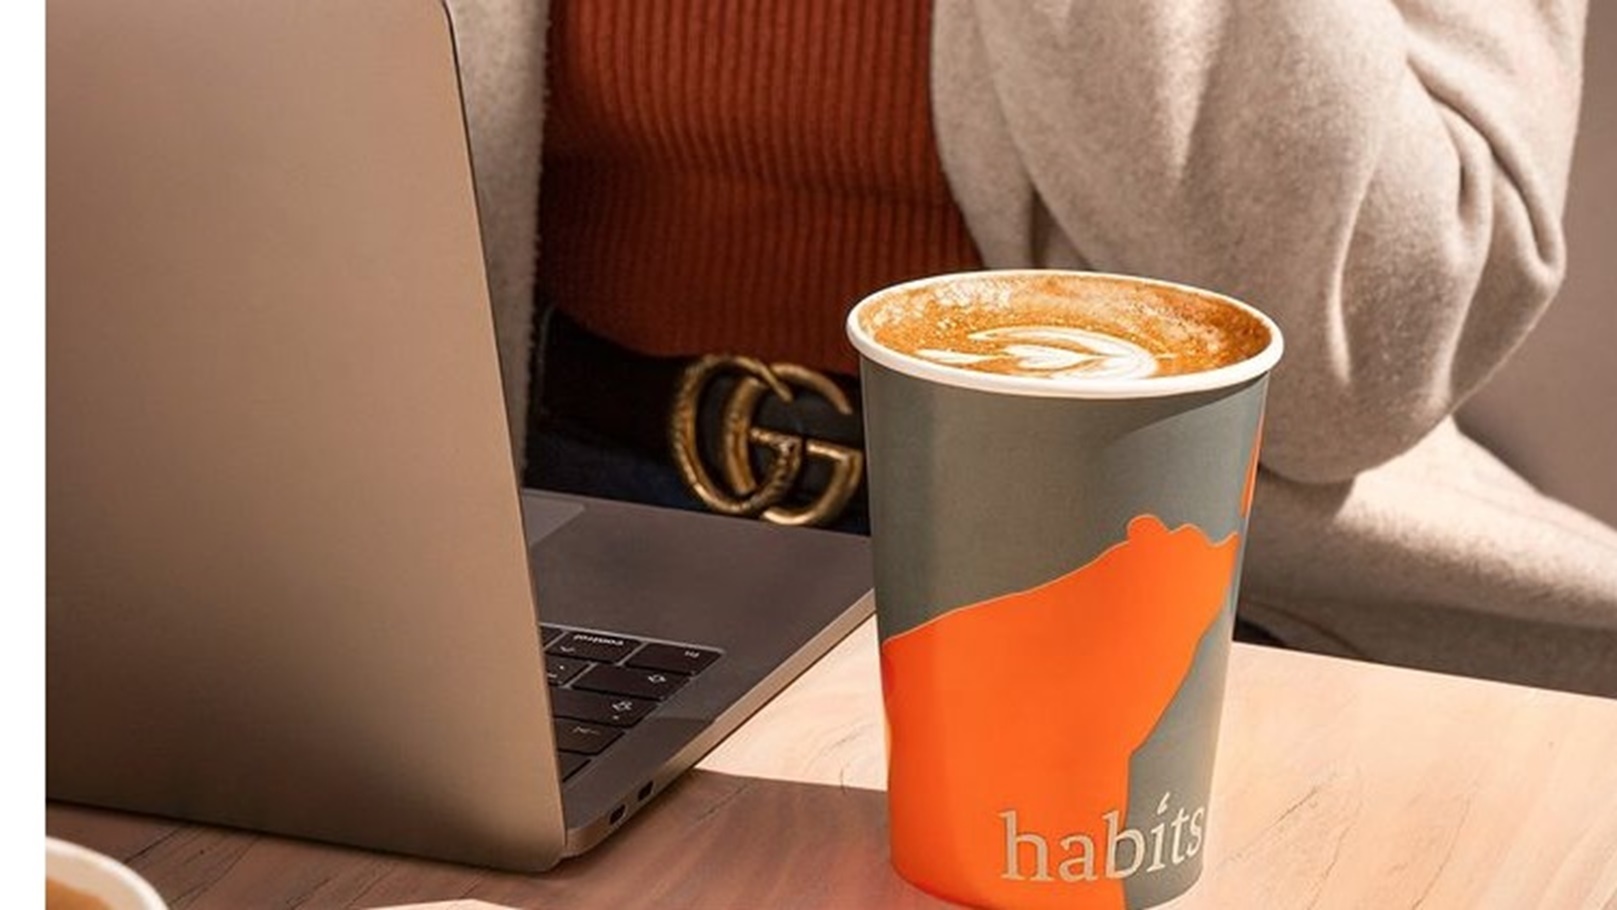 Habits Cafe